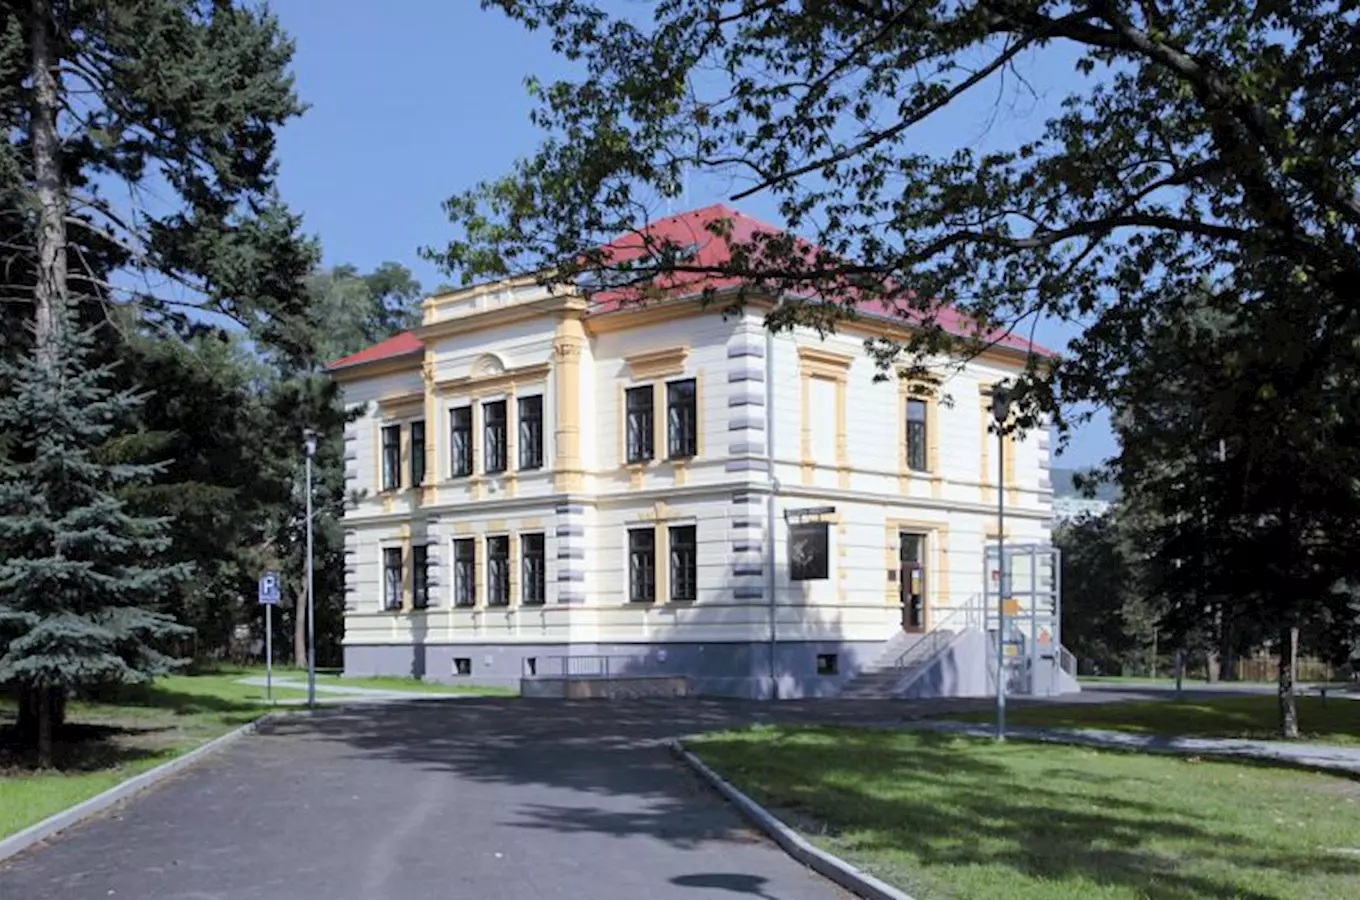 Kludského vila – expozice věnovaná rodině Kludských v Jirkově